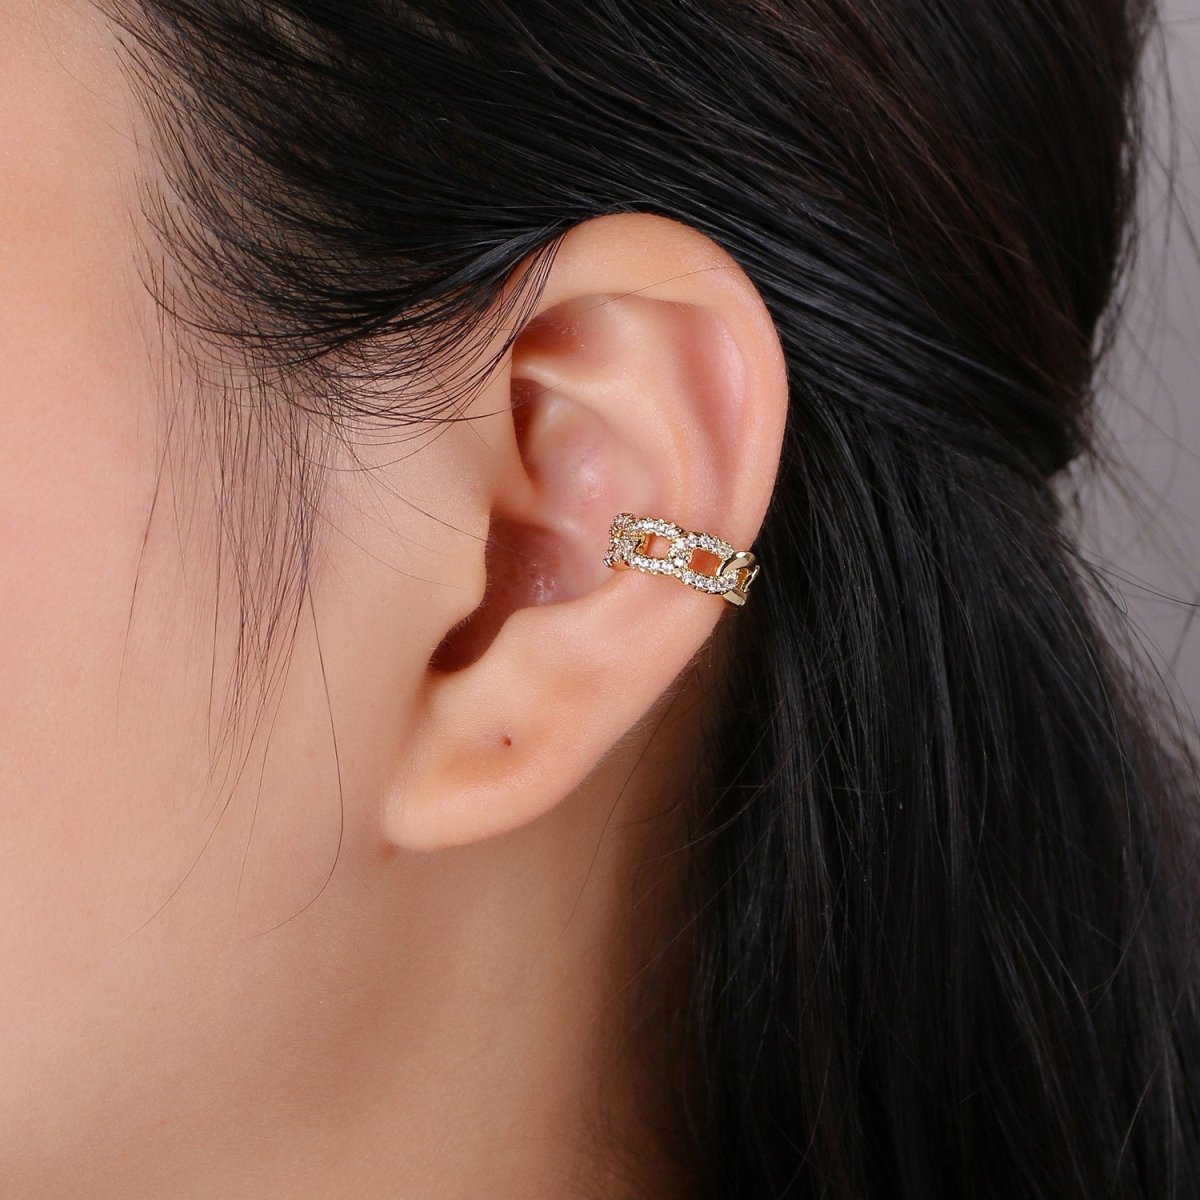 1x Gold Ear Cuff-Upper Ear Earring No Piercing-Helix Ear Cuff-Cartilage Ear Cuff-Ear cuff no piercing-Ear Cuff Earring-Link Chain Earcuff AI-127 AI-128 AI-129 - DLUXCA